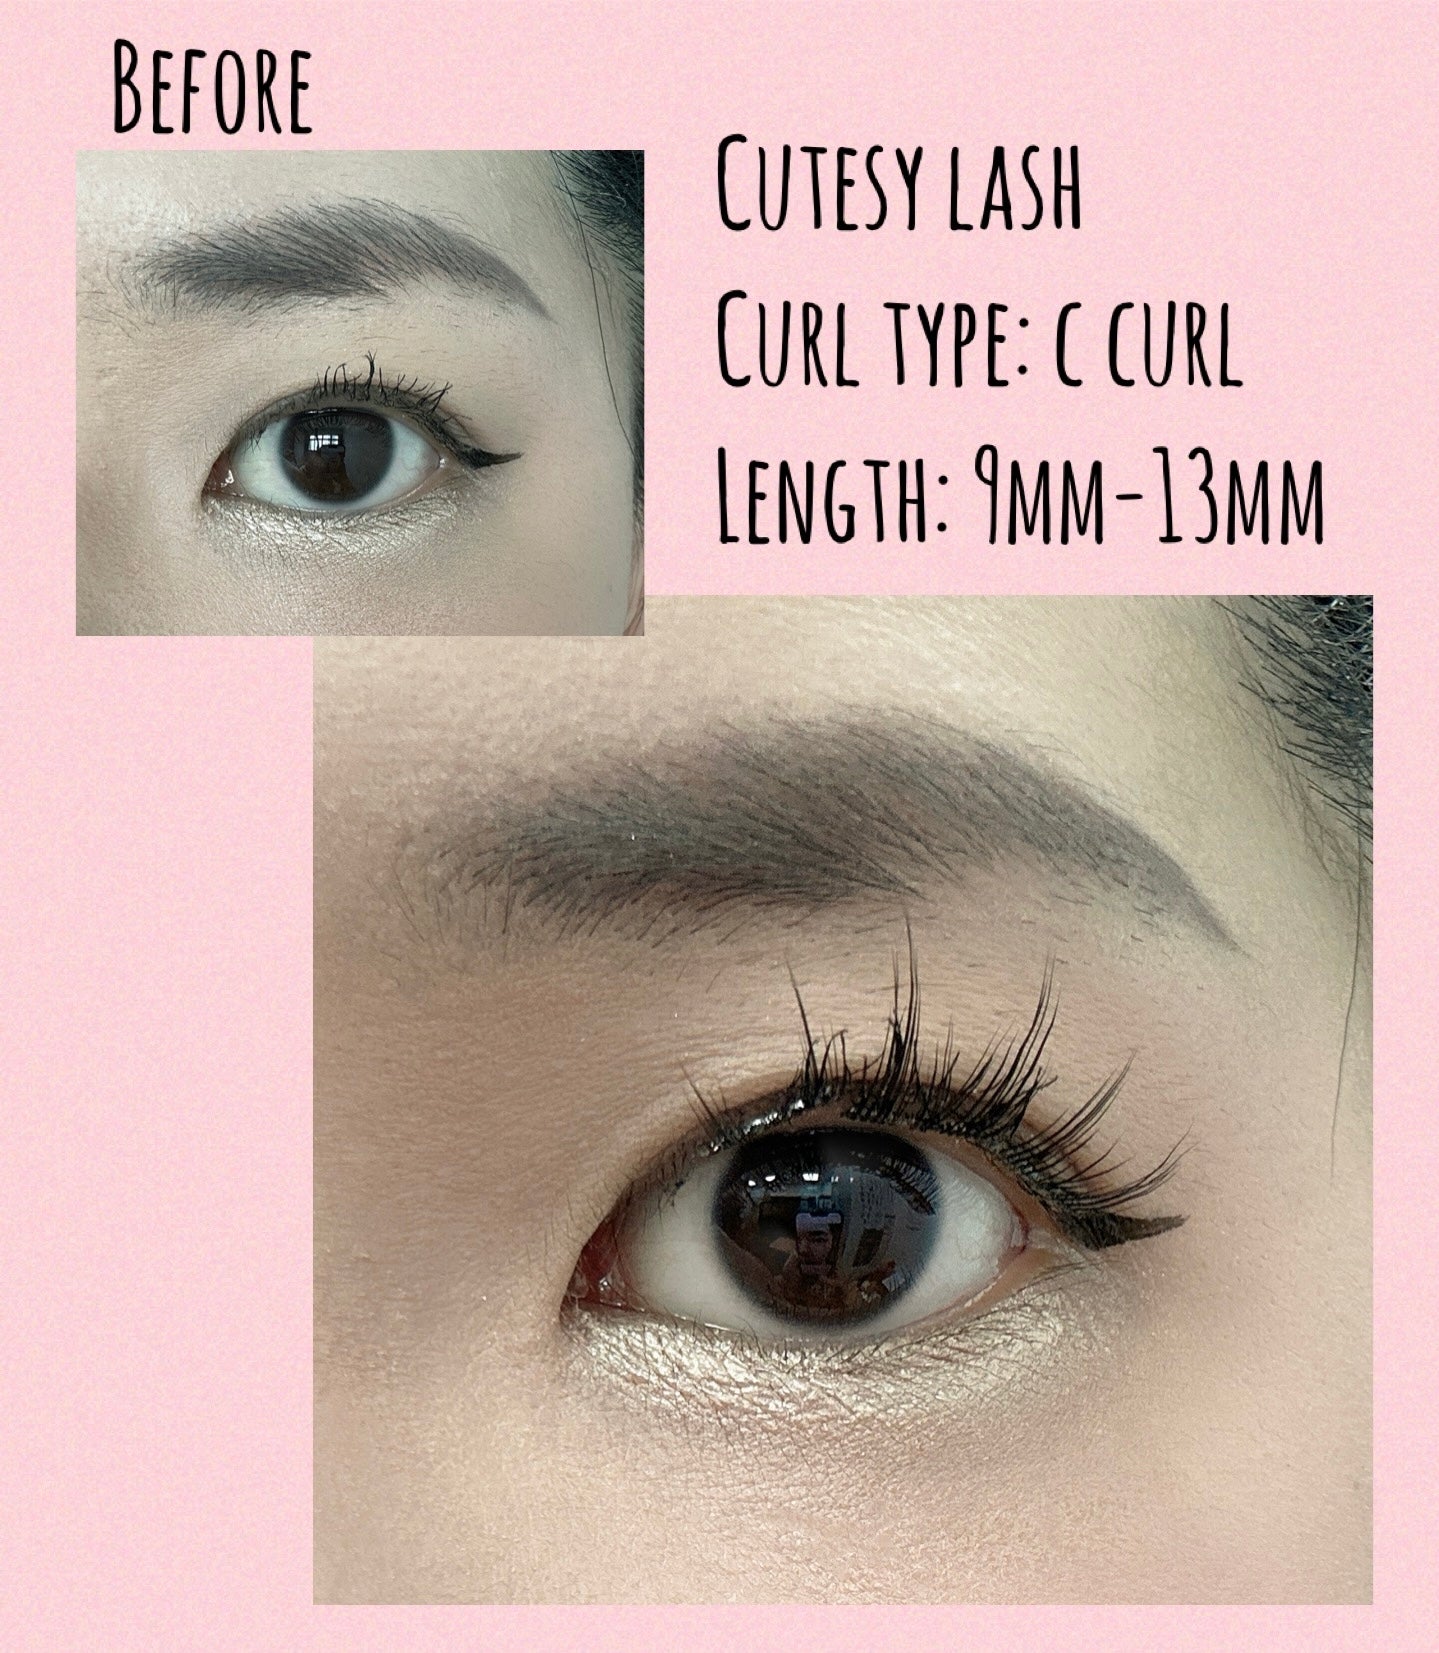 Cutesy lash (6 pairs of self adhesive lashes)